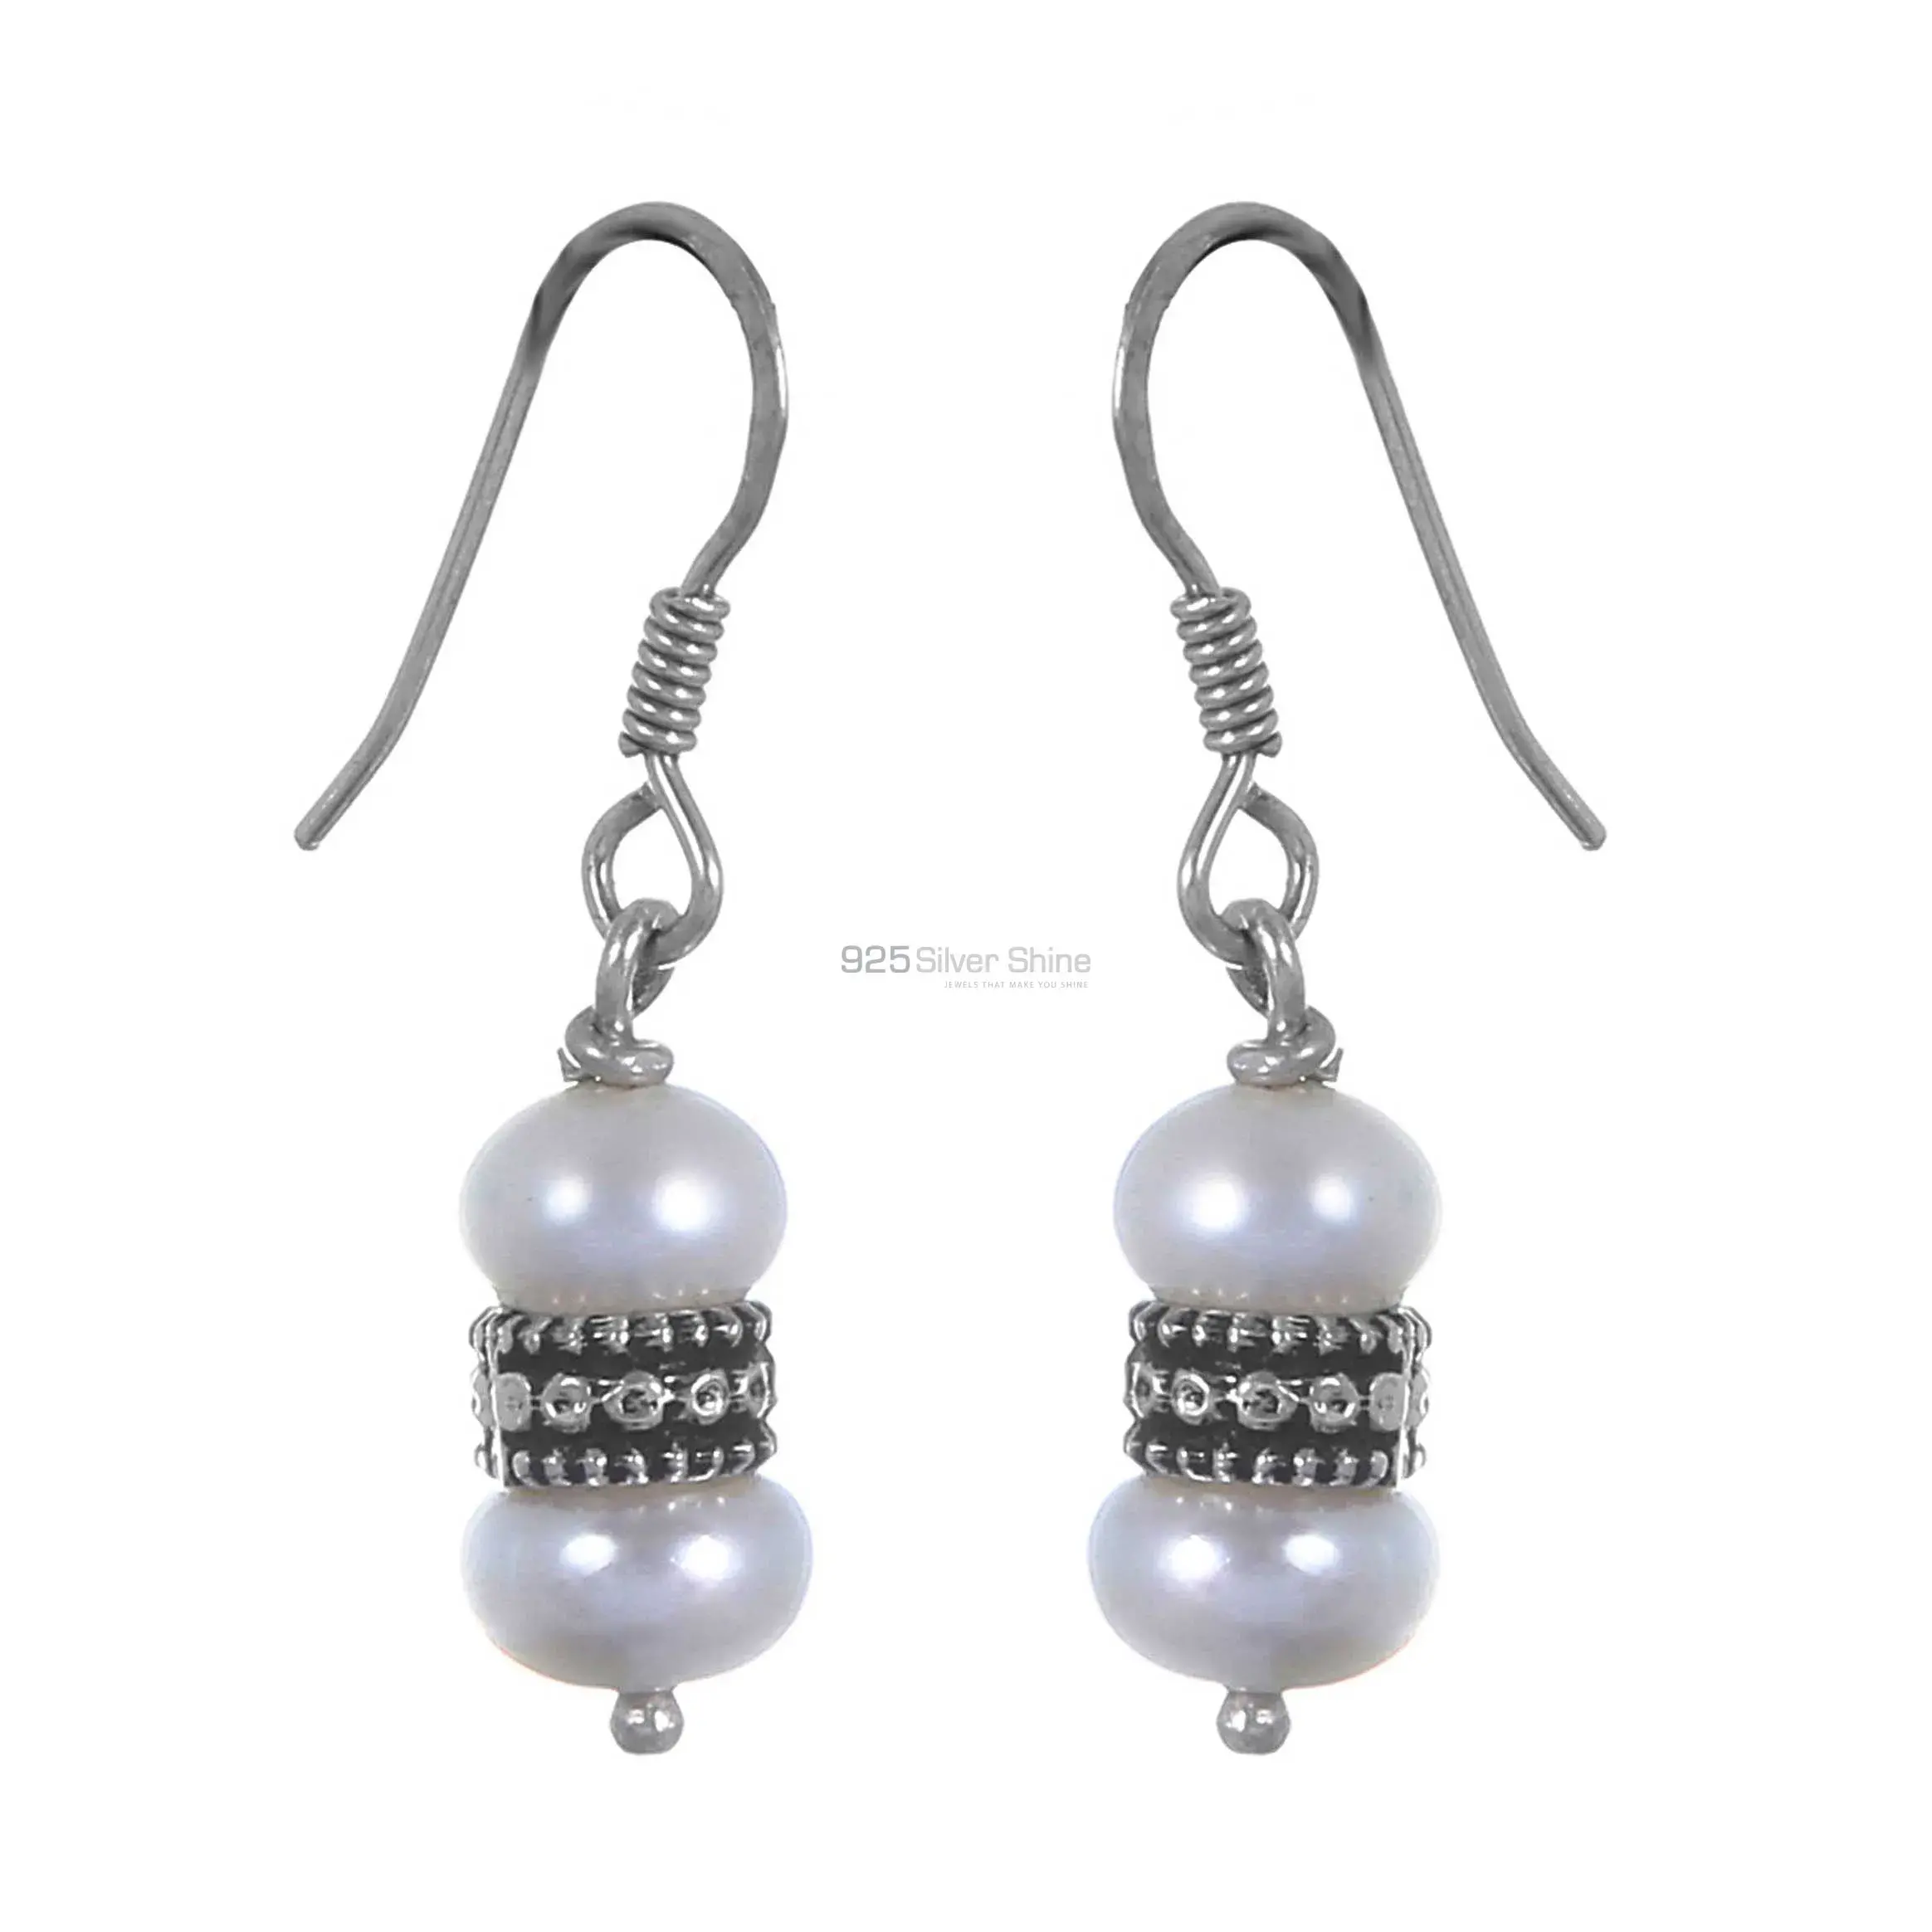 Beautiful 925 Sterling Silver Handmade Earrings Suppliers In Pearl Gemstone Jewelry 925SE293_0